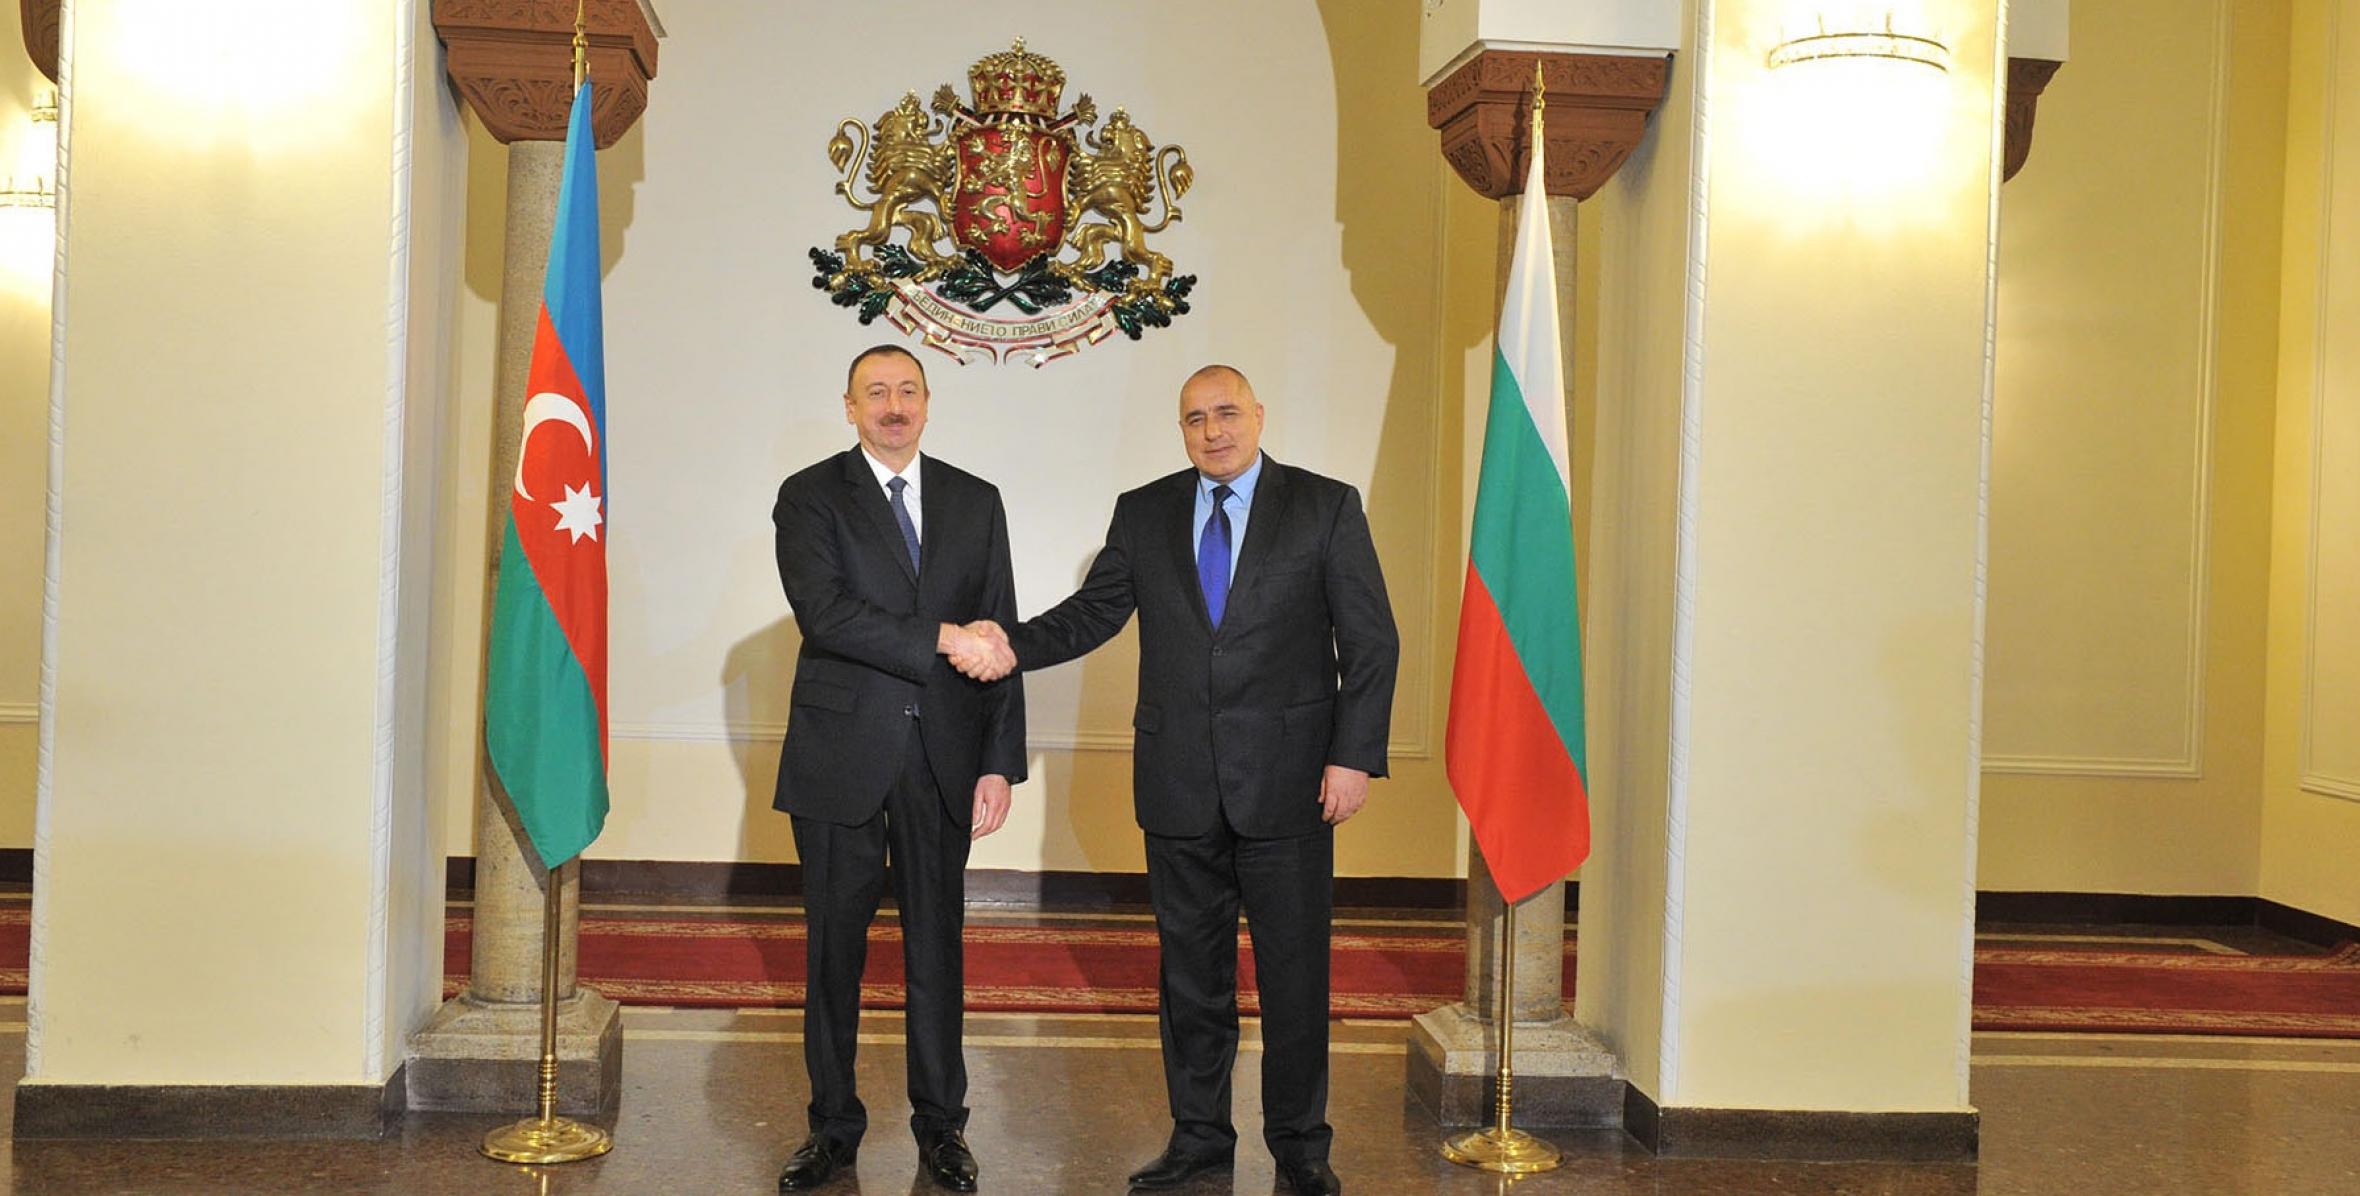 Состоялась встреча Ильхама Алиева и Президента Болгарии Росена Плевнелиева один на один